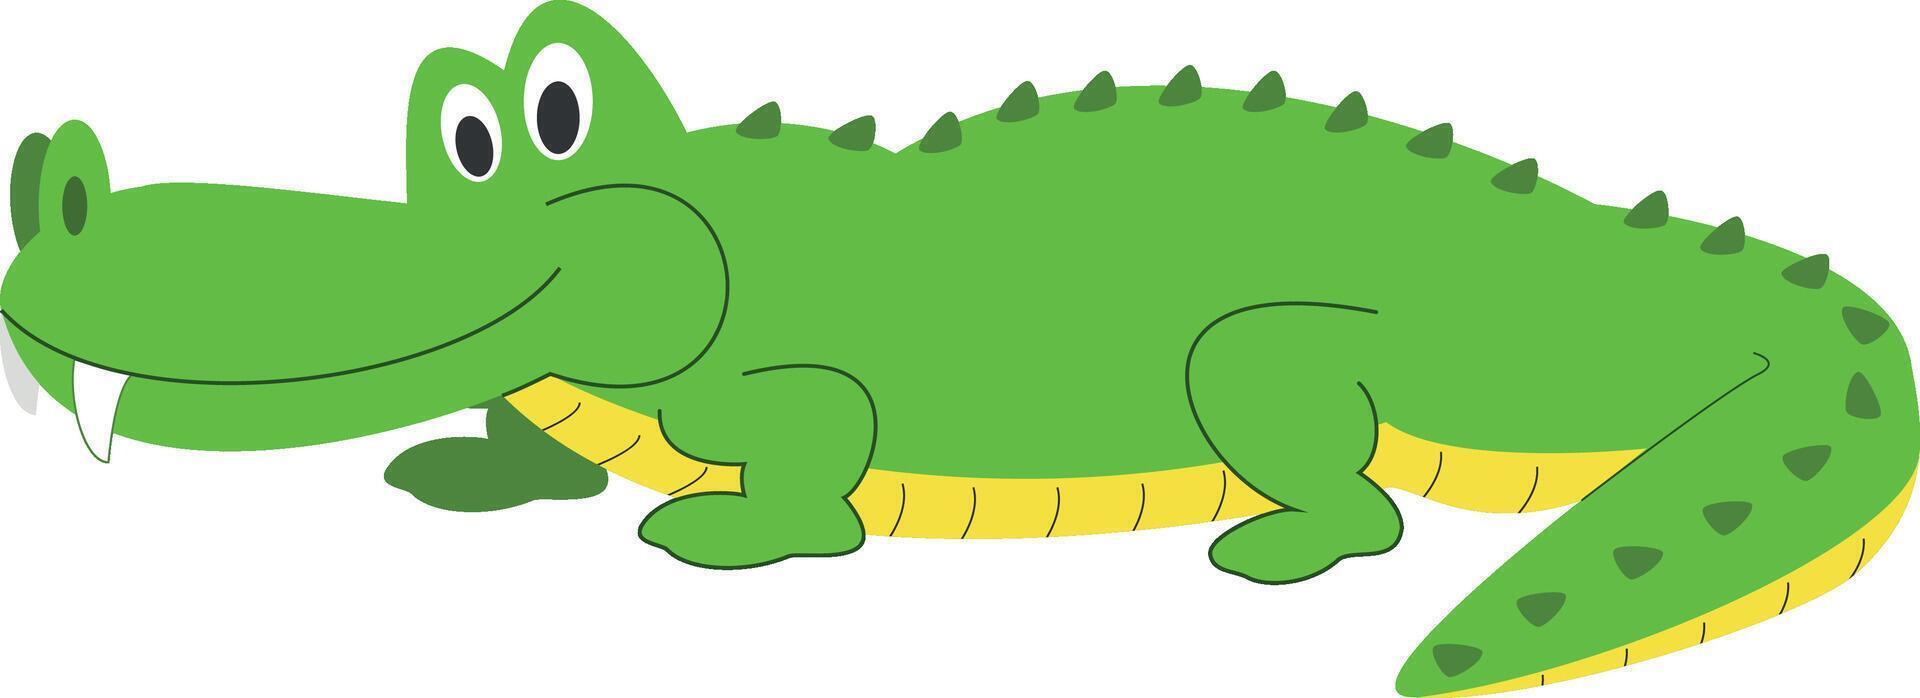 Cute cartoon alligator illustration vector